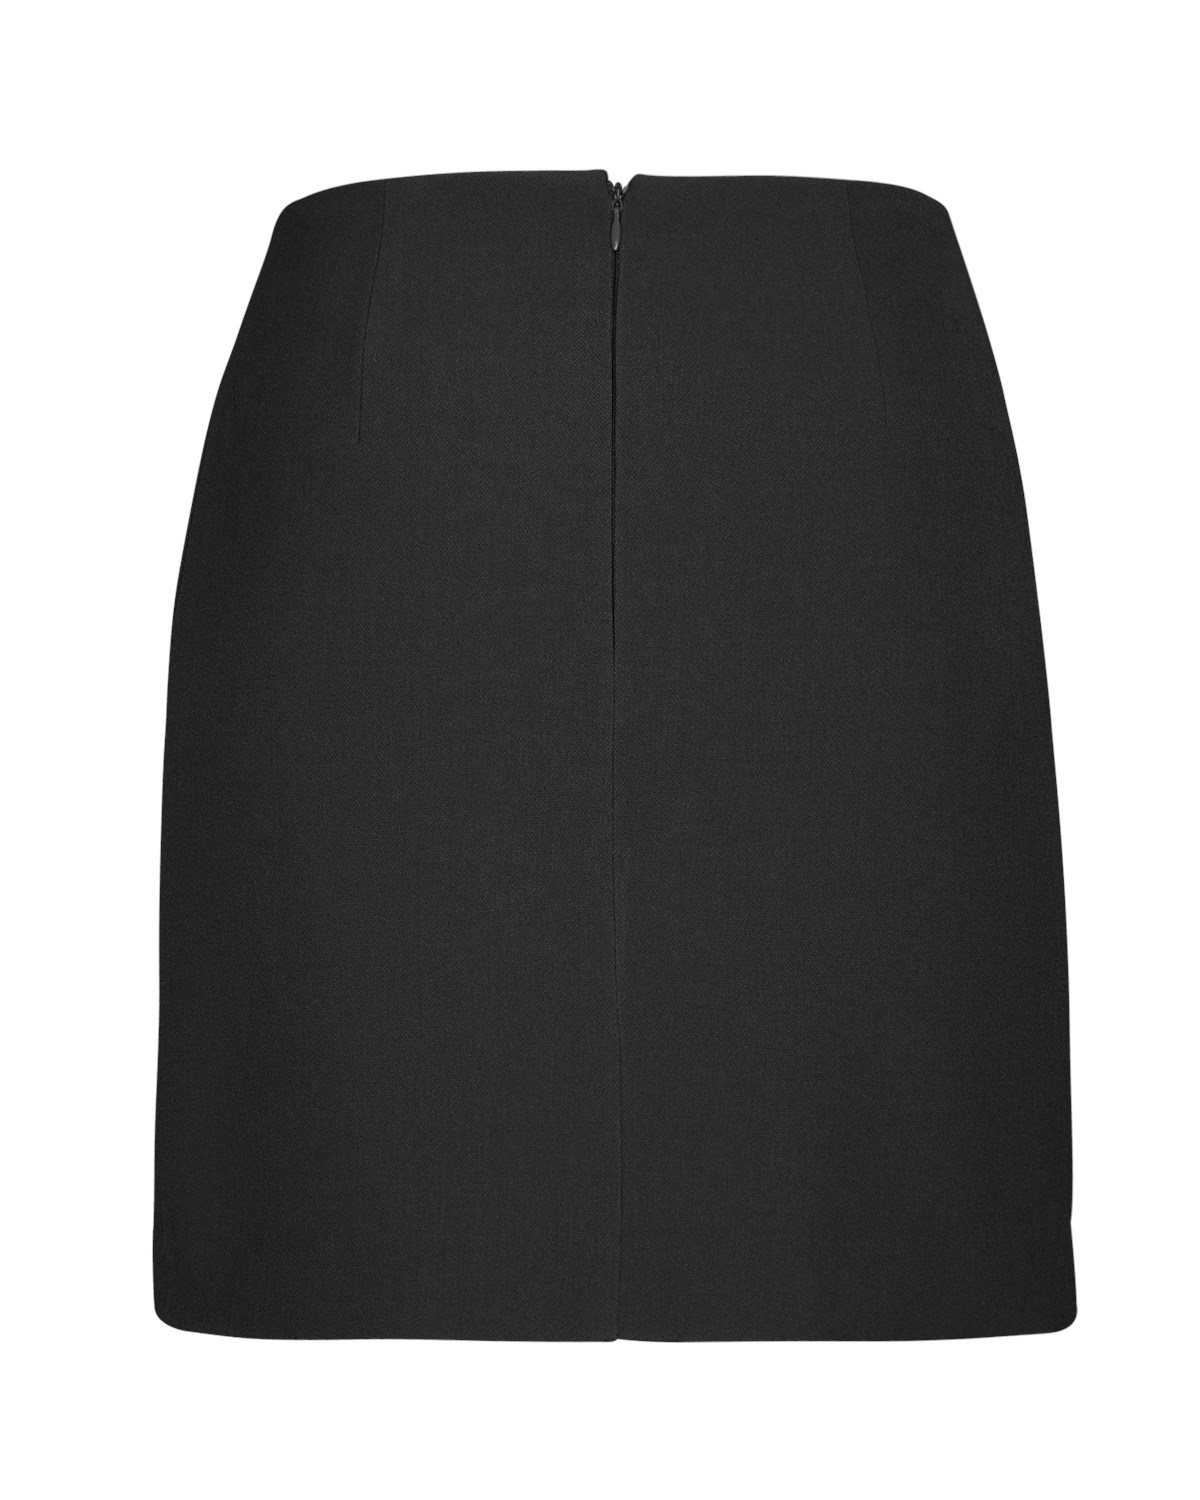 Thalea Black HW Skirt item back